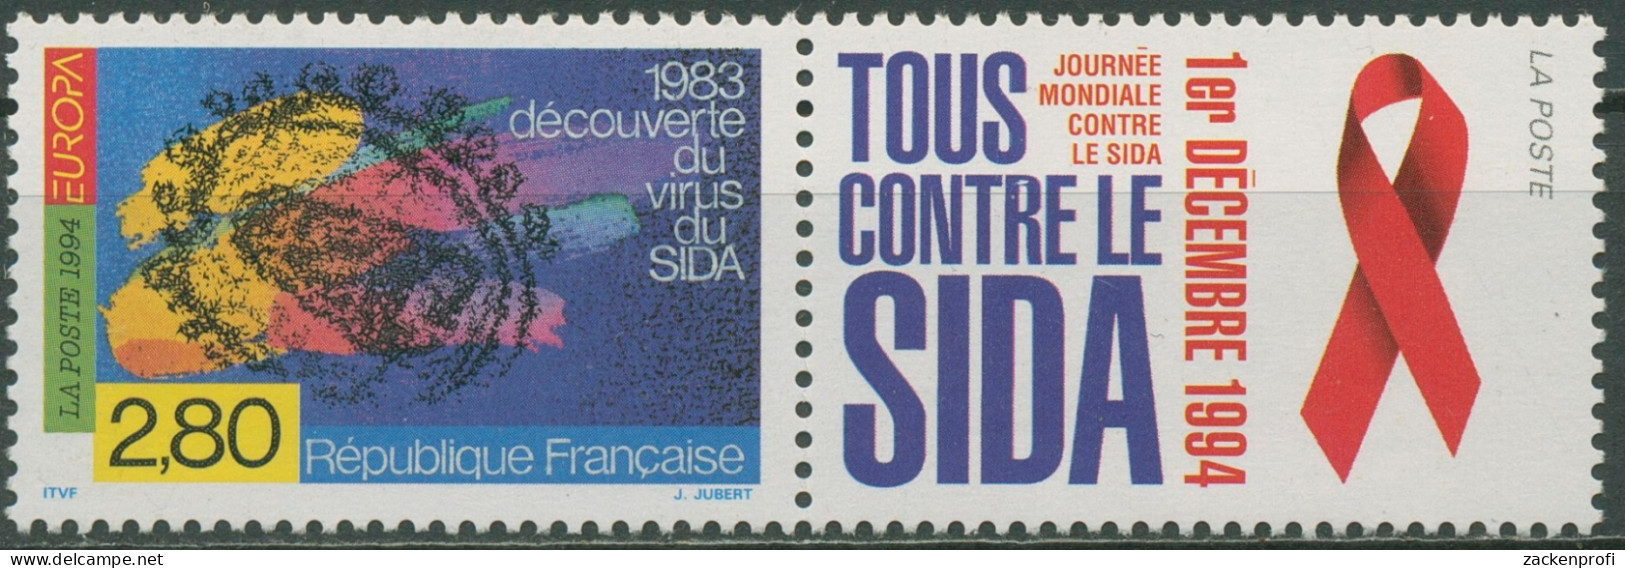 Frankreich 1994 Europa CEPT Entdeckungen Erfindungen 3021 Zf Postfrisch - Ungebraucht